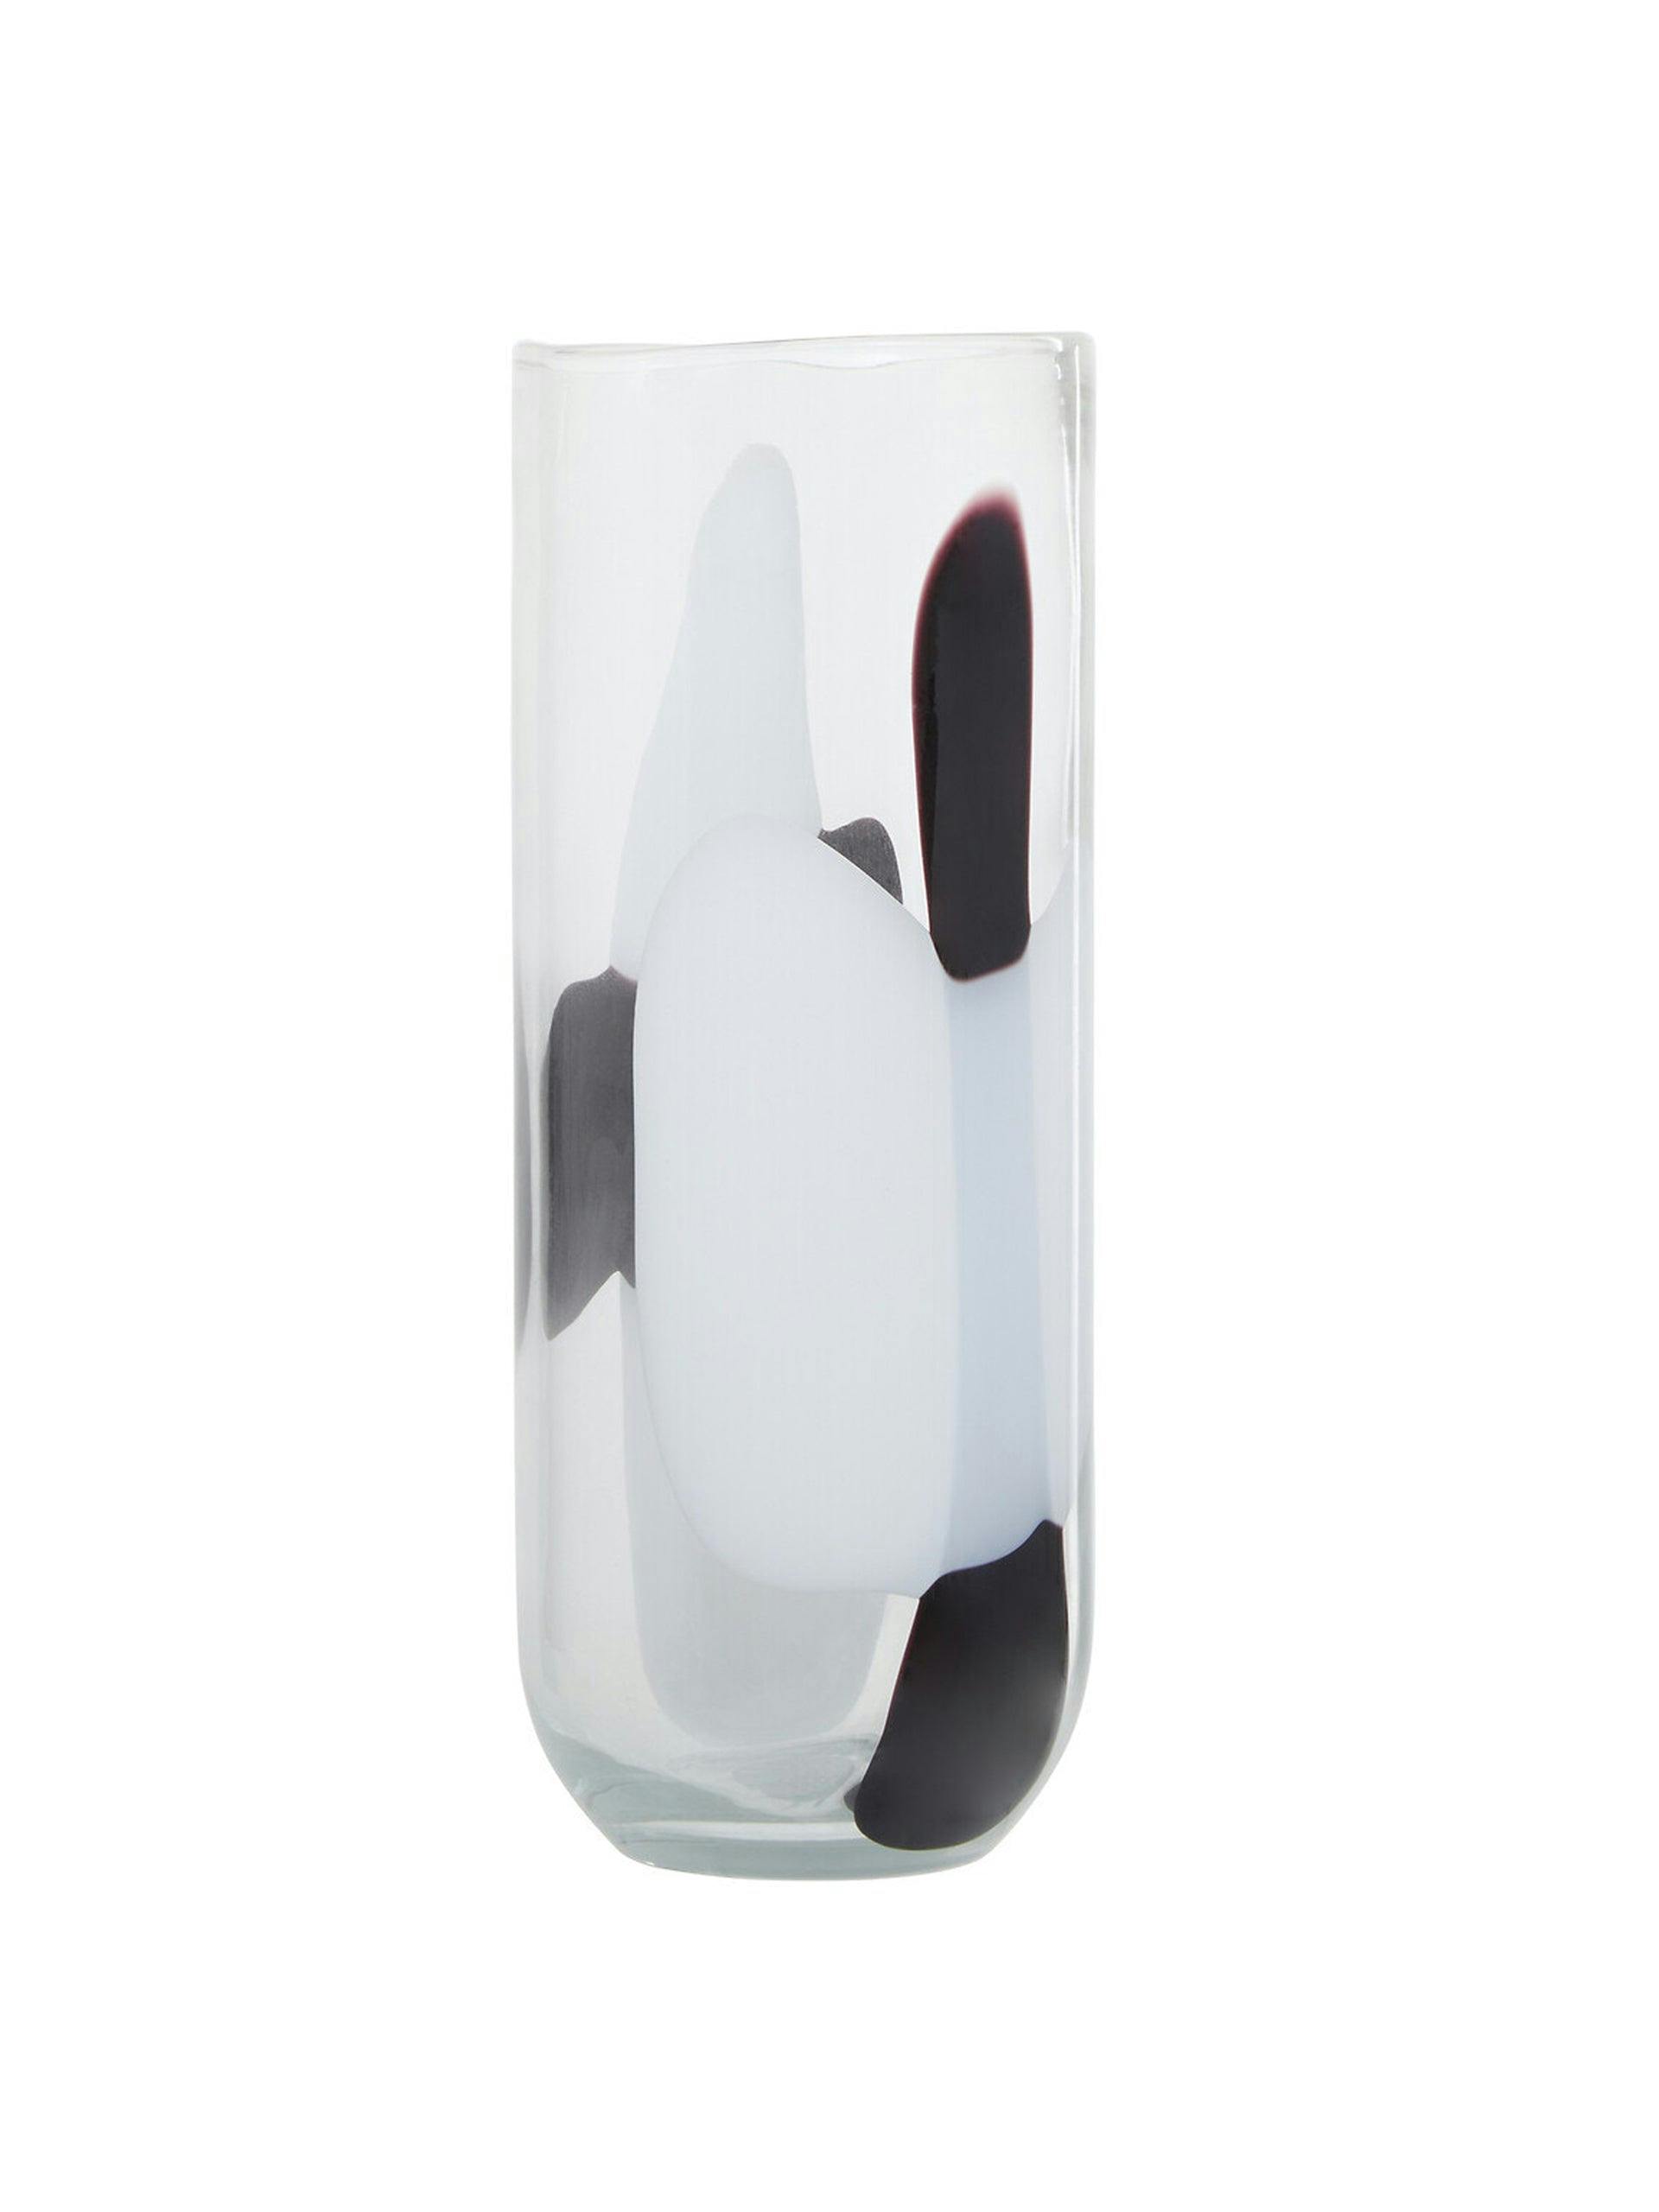 Monochrome glass vase